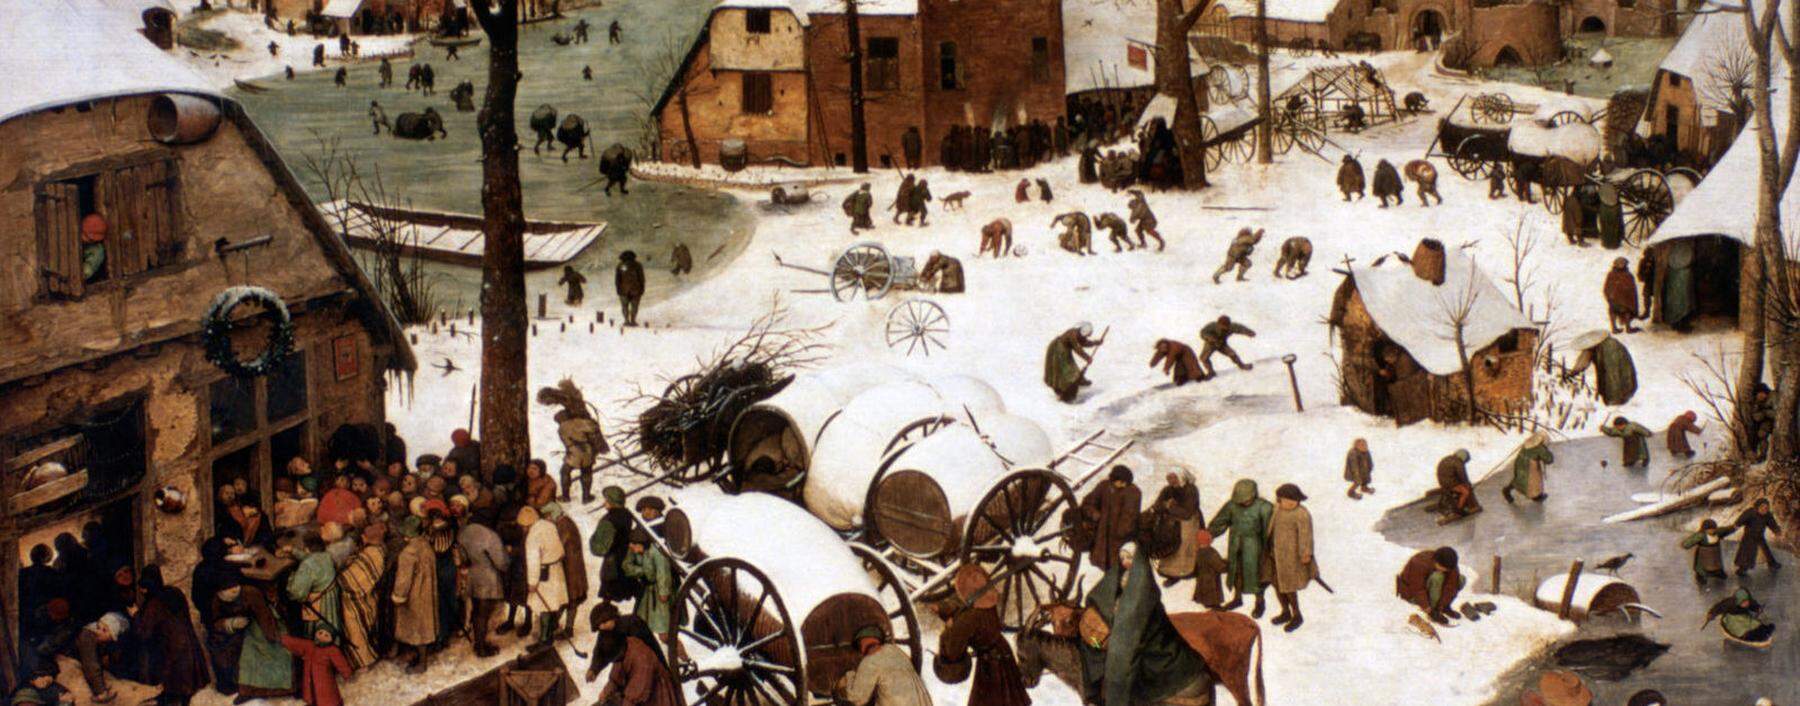 Die Geschichte von Weihnachten hat viel gemeinsam mit dem Bethlehem-Bild (1566) von Pieter Bruegel: Man muss das Wesentliche erst suchen. 